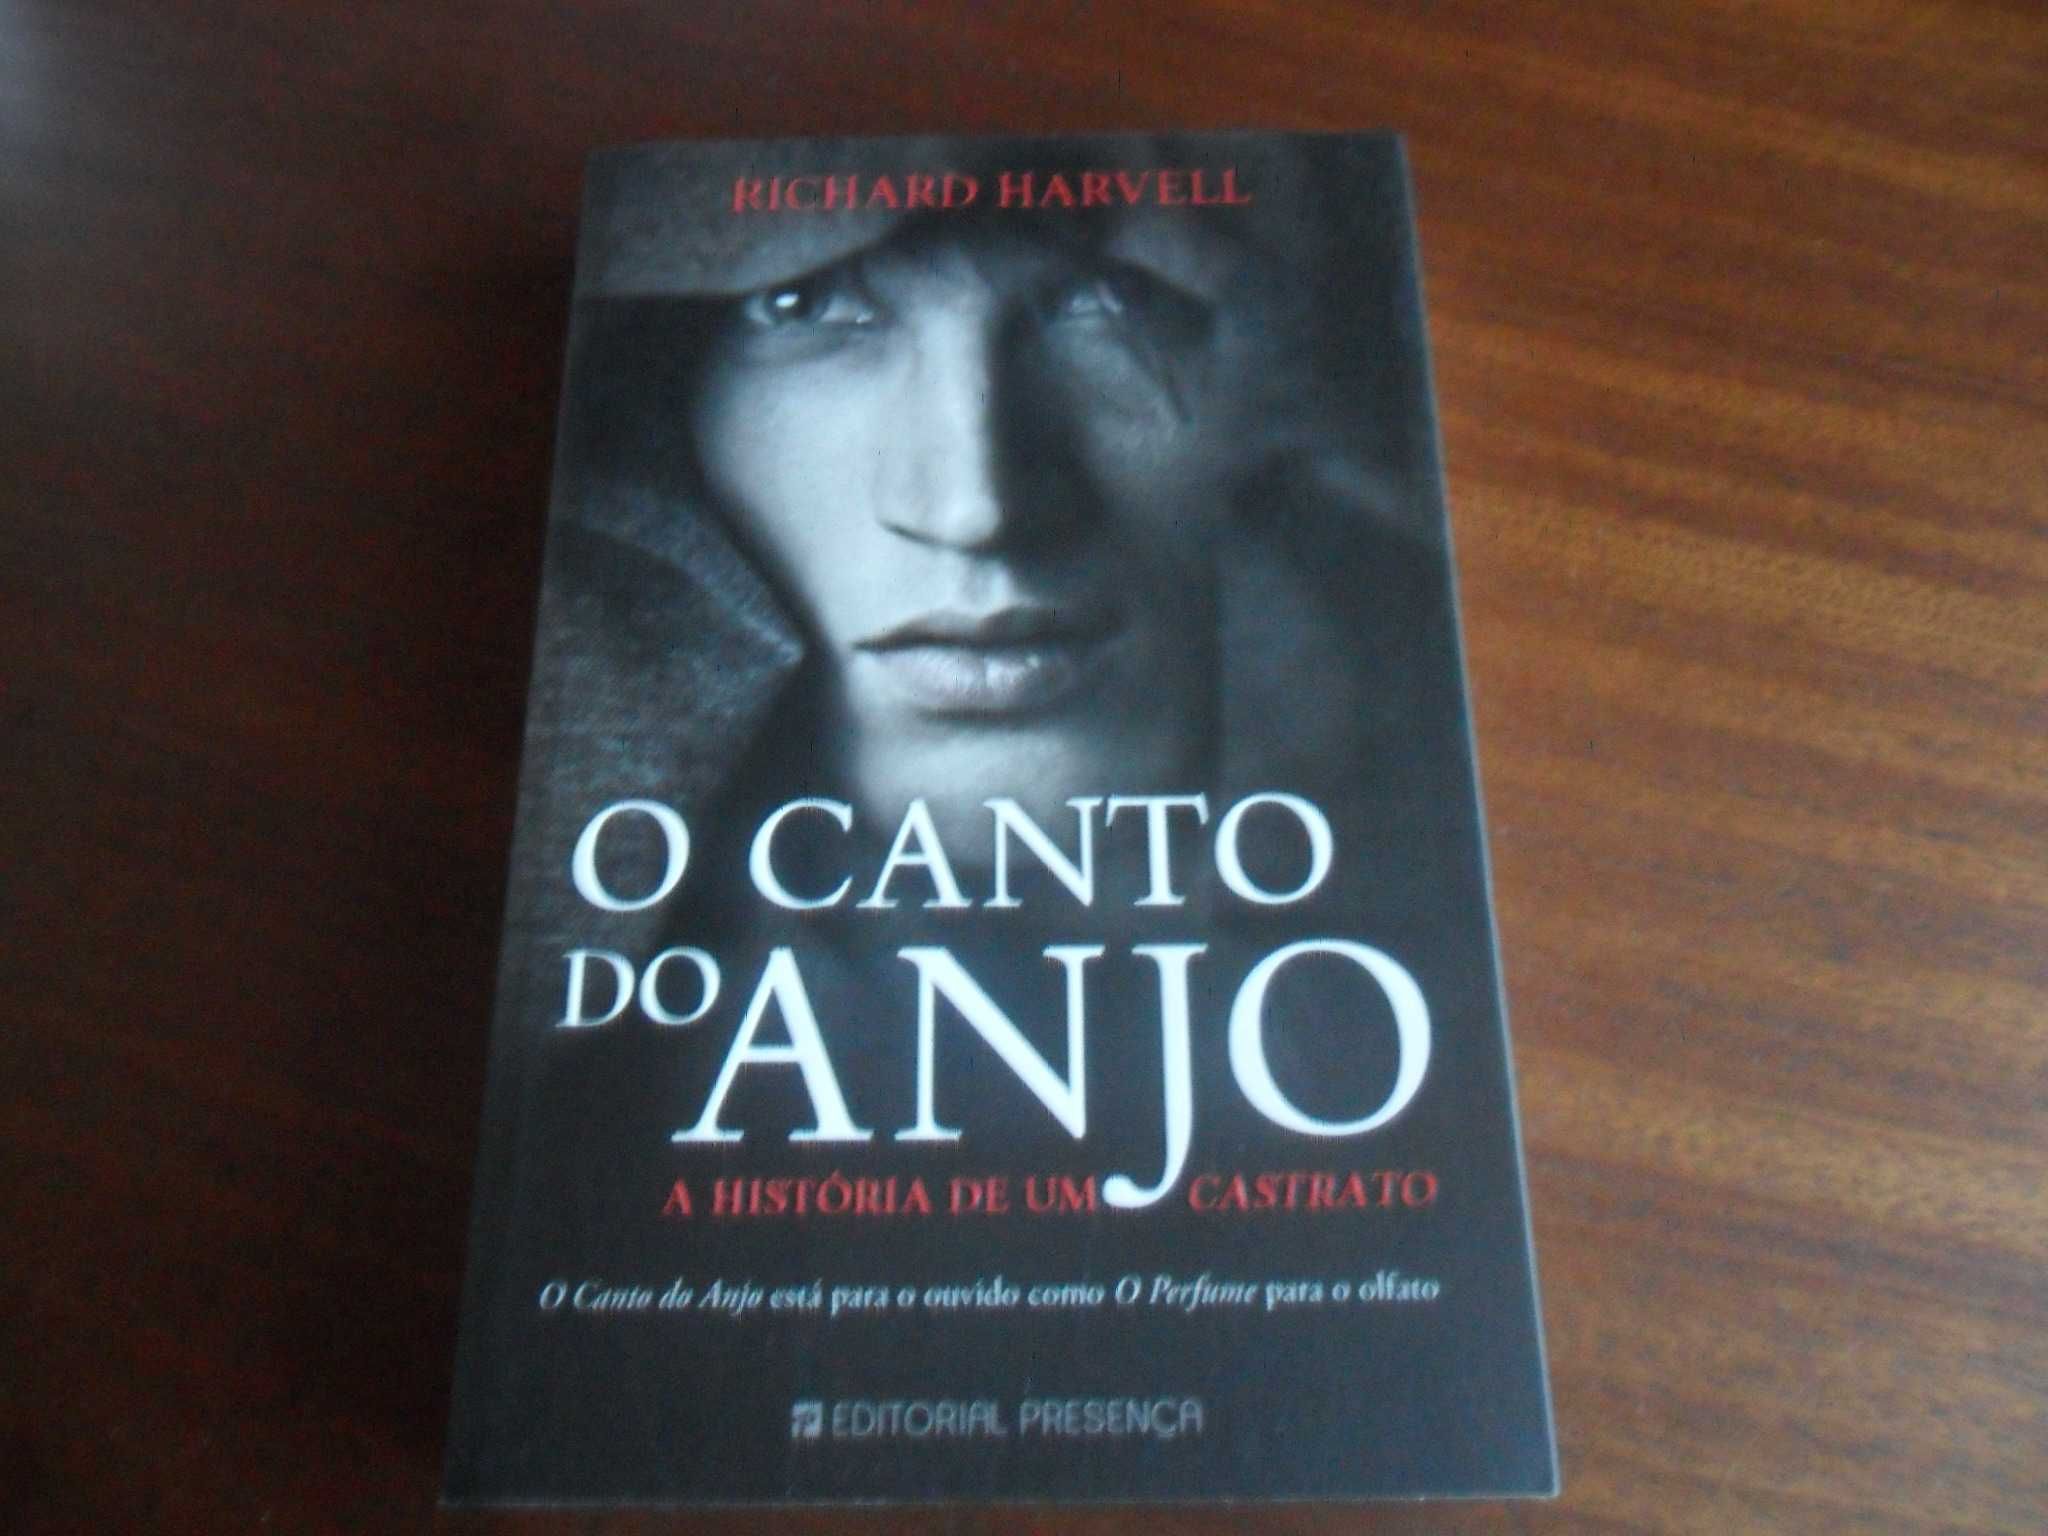 "O Canto do Anjo" - A História de um Castrato de Richard Harvell